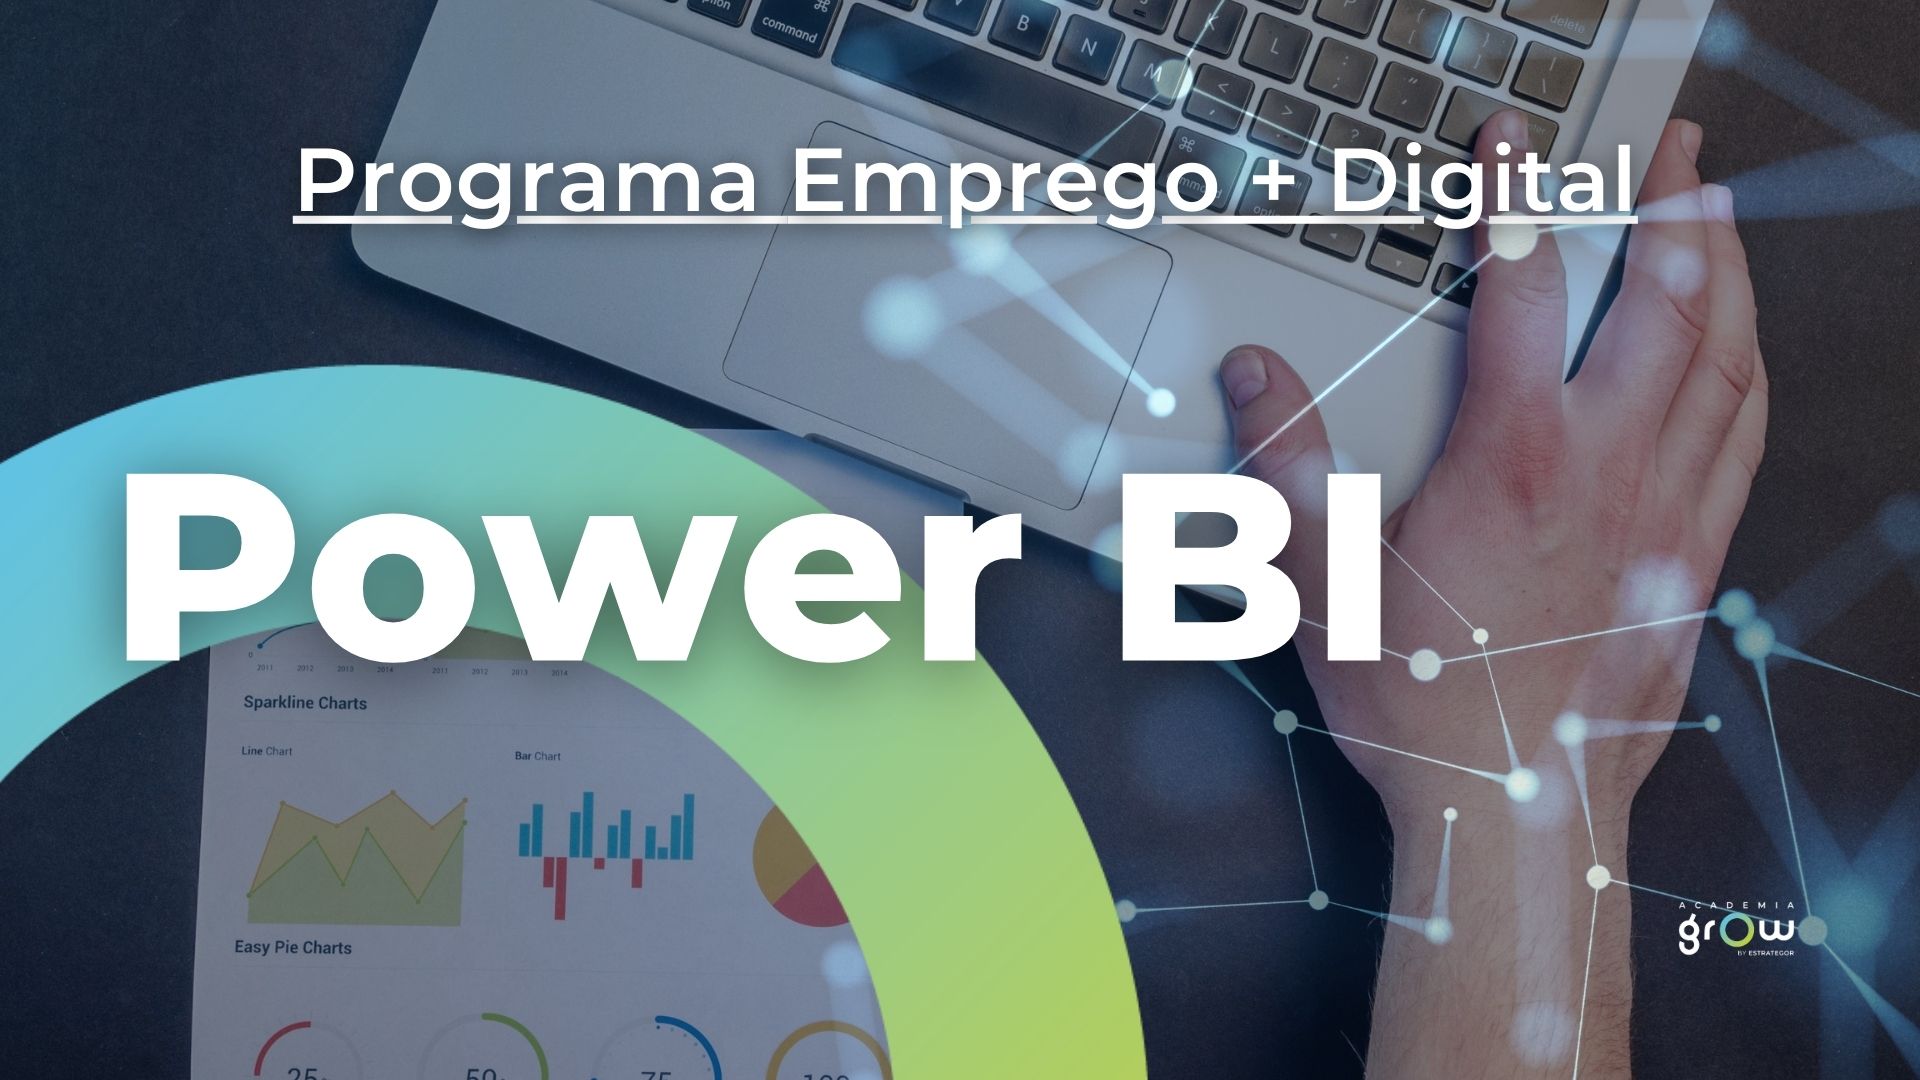 Power BI - Formação Financiada Emprego Mais Digital